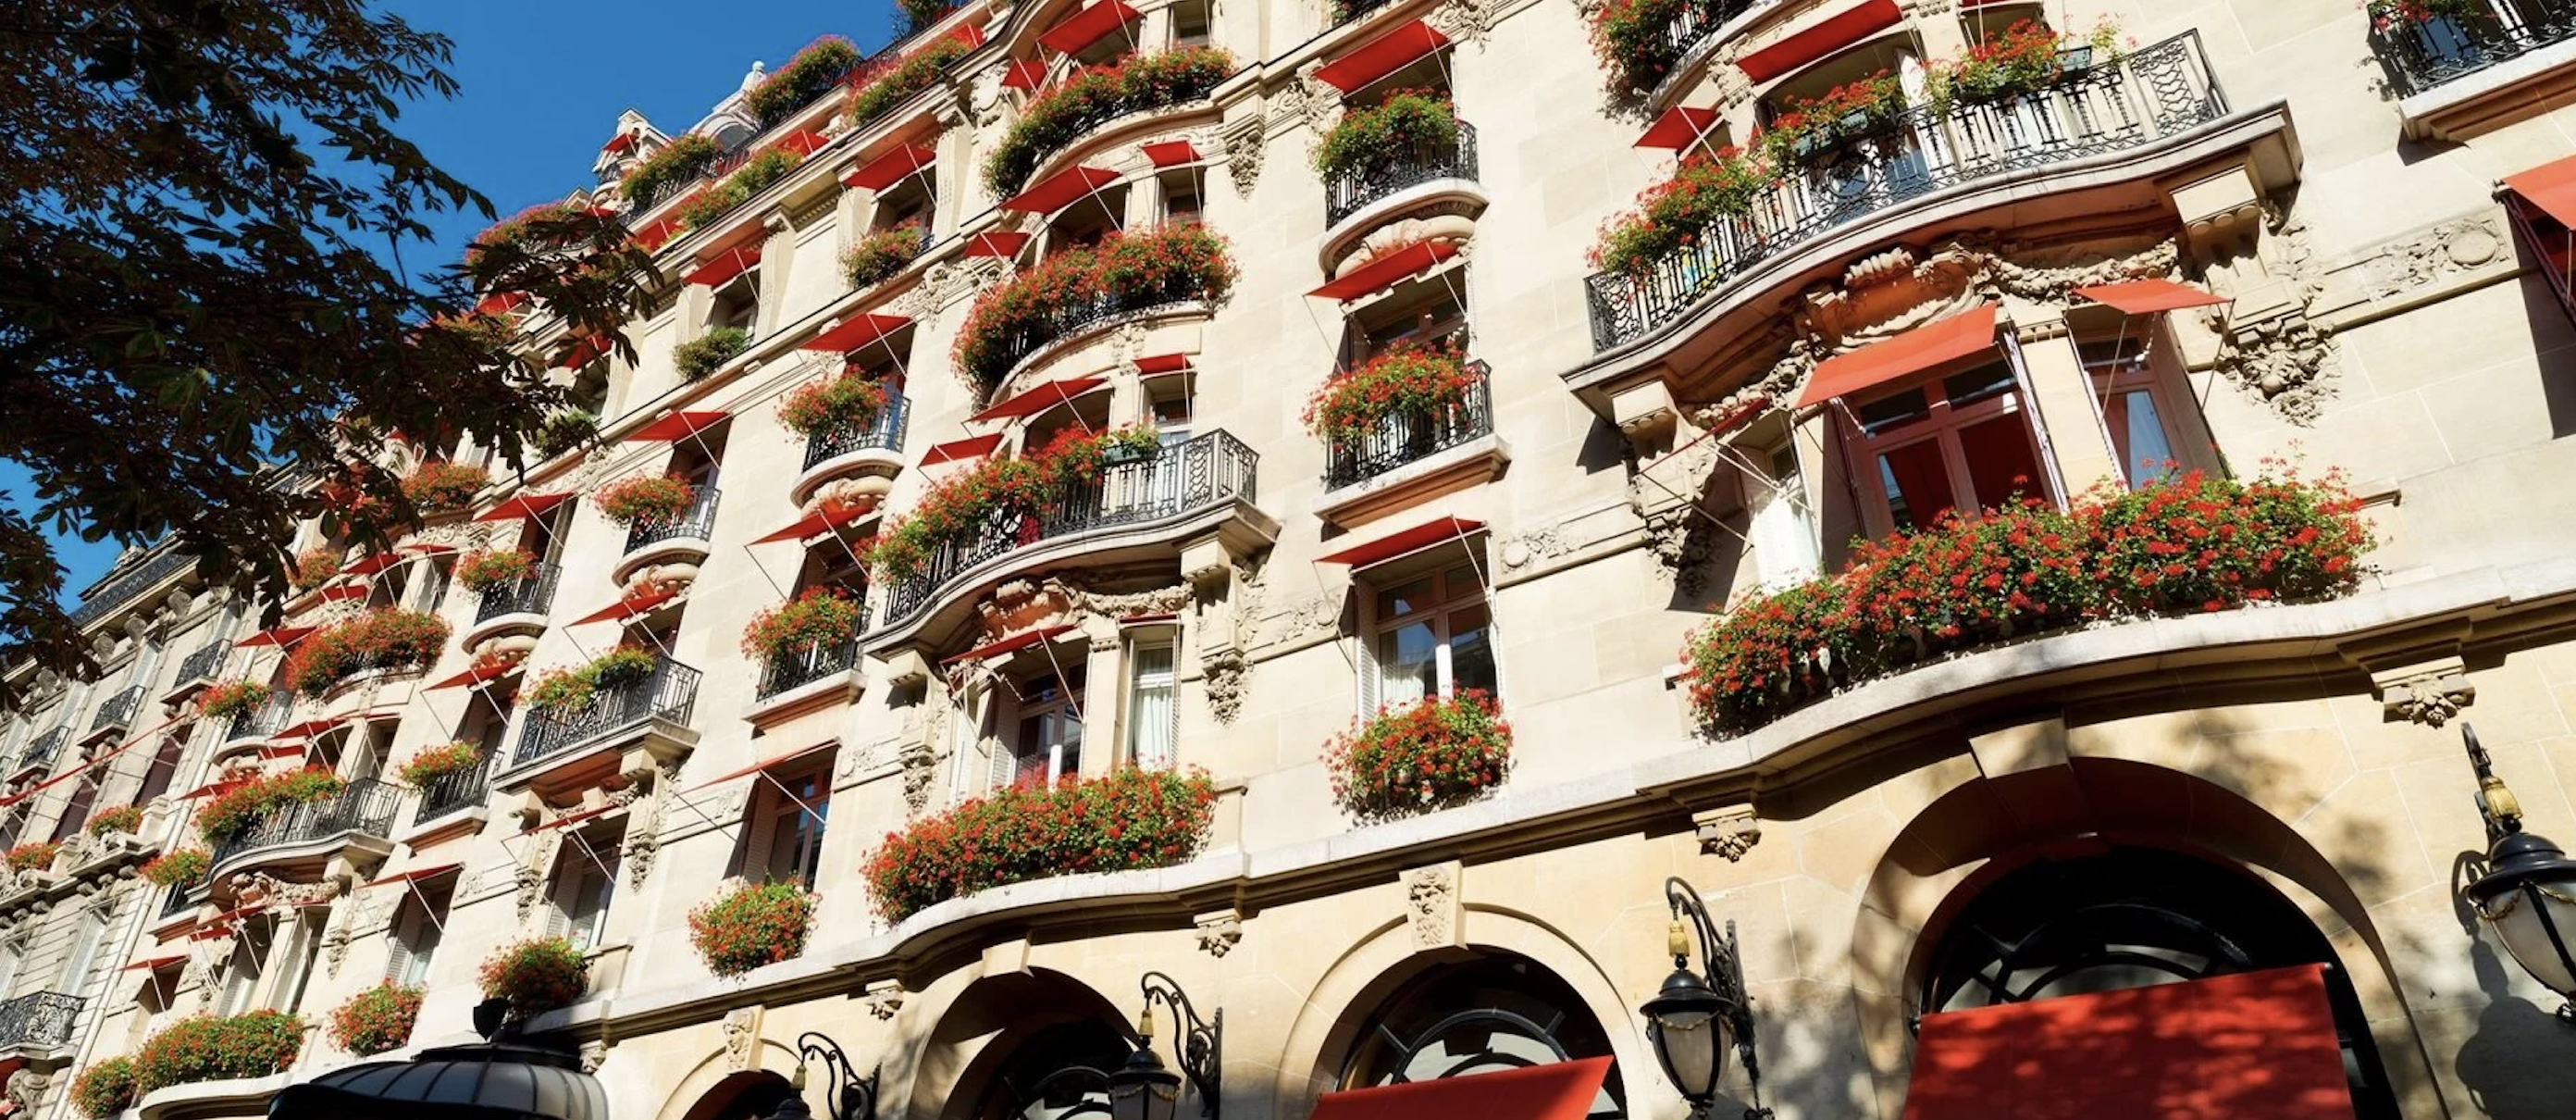 Best Paris Hotels for Reward Points.